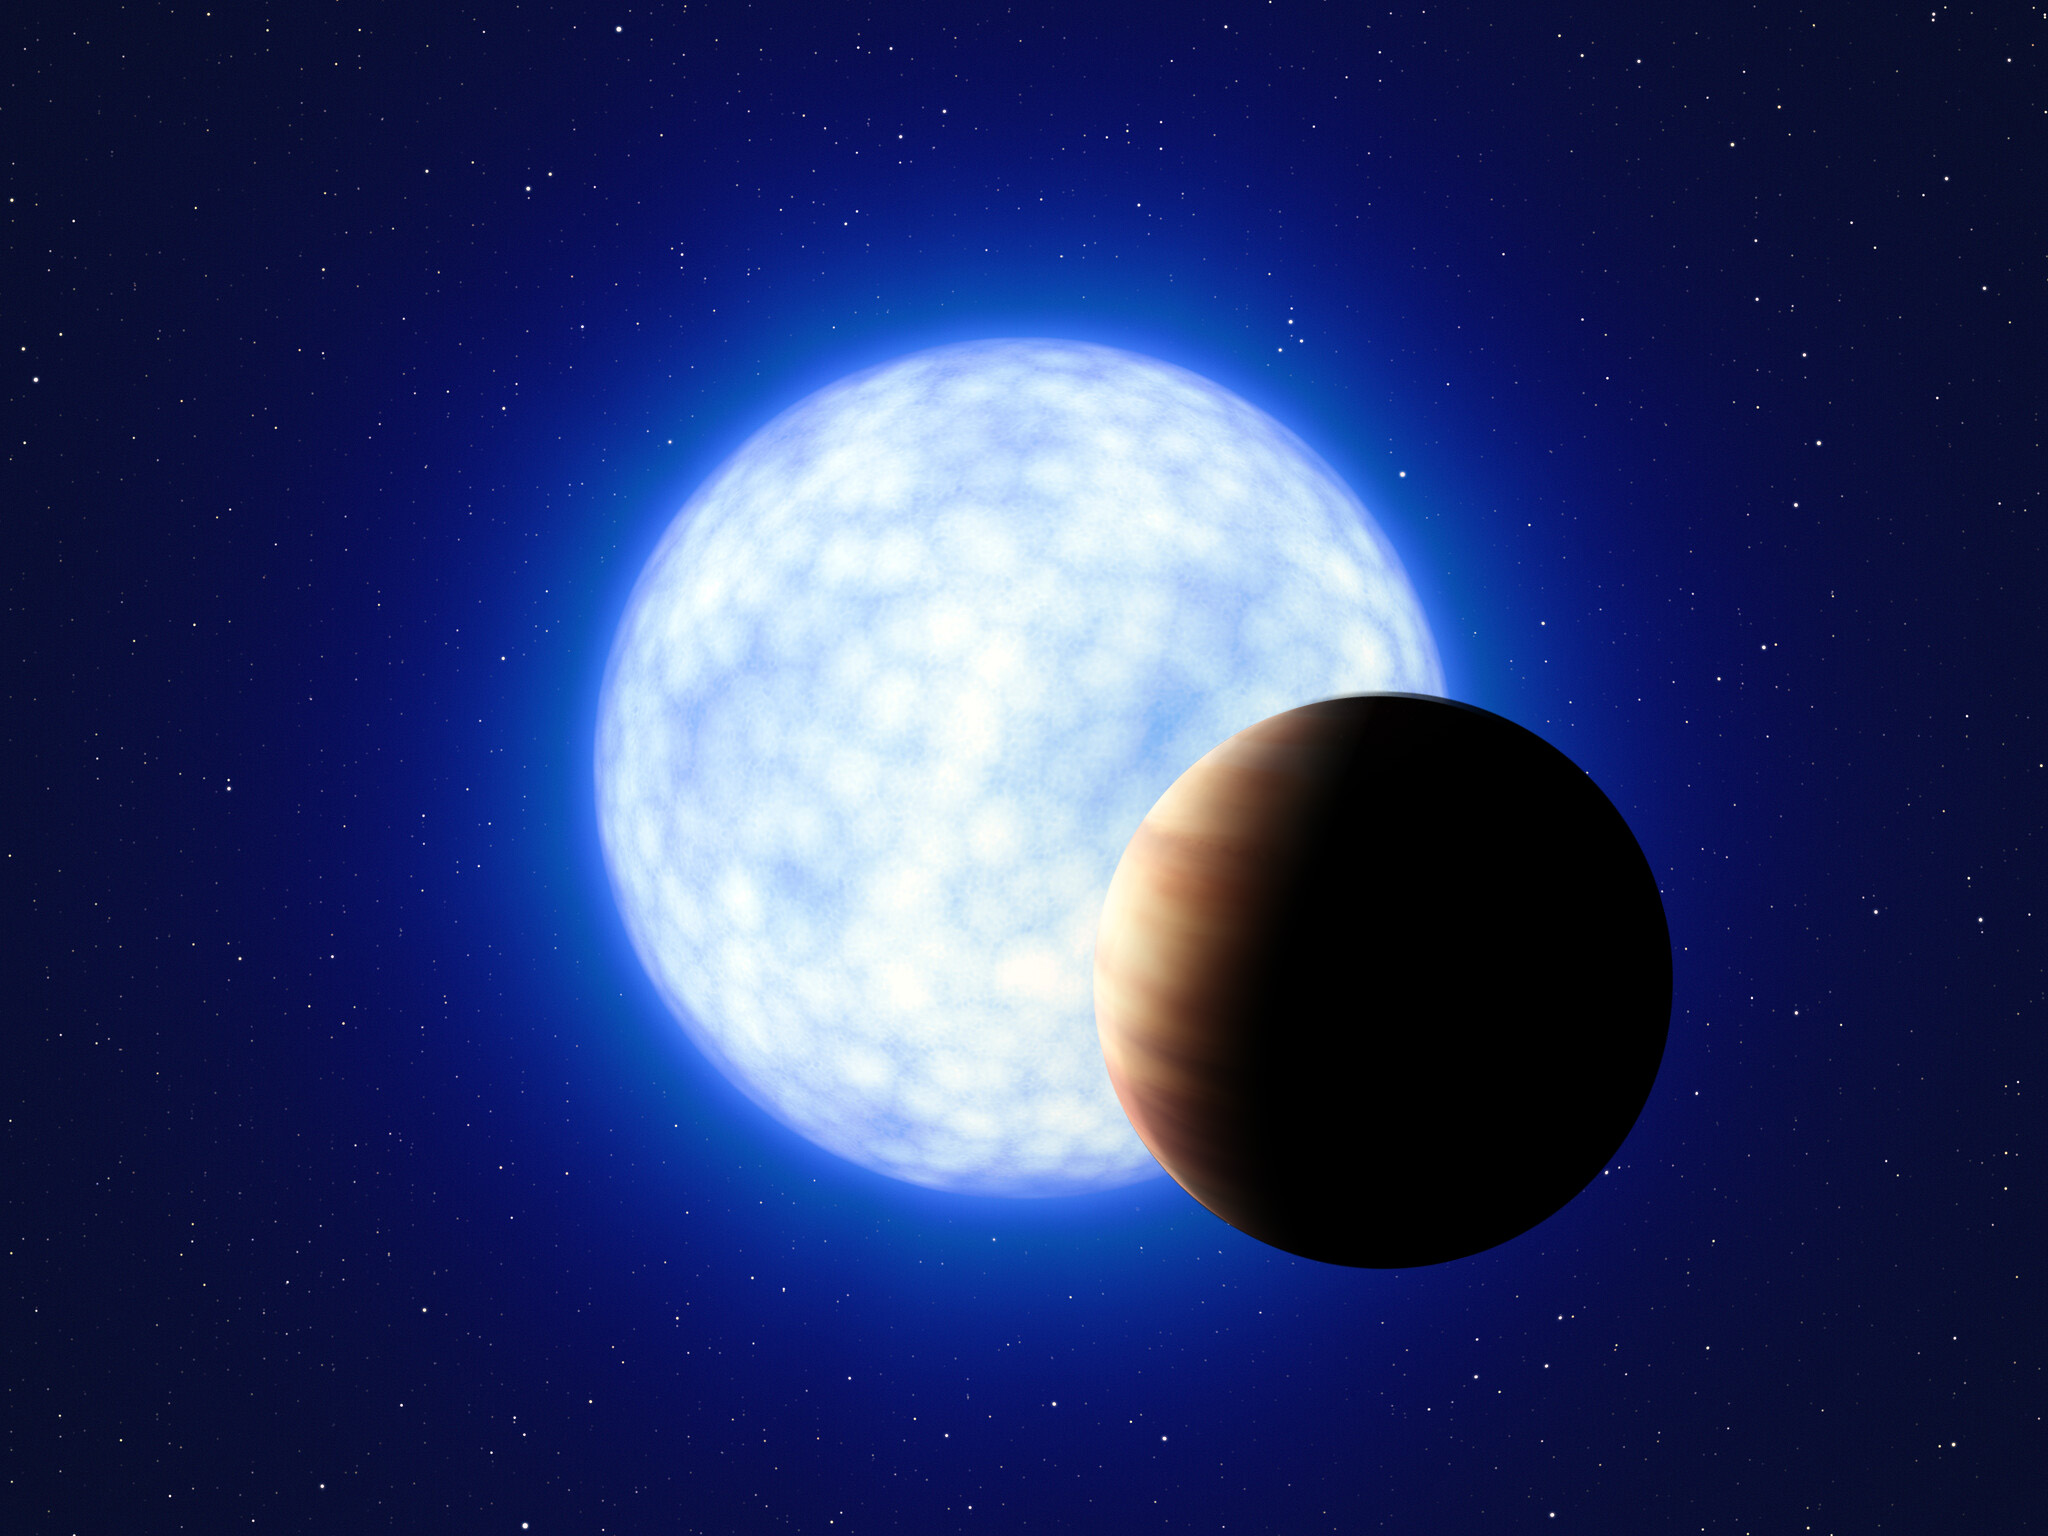 Conceção artística de uma estrela quente e azul, com vinte cinco vezes mais massa do que o Sol, e de um planeta semelhante a Júpiter.